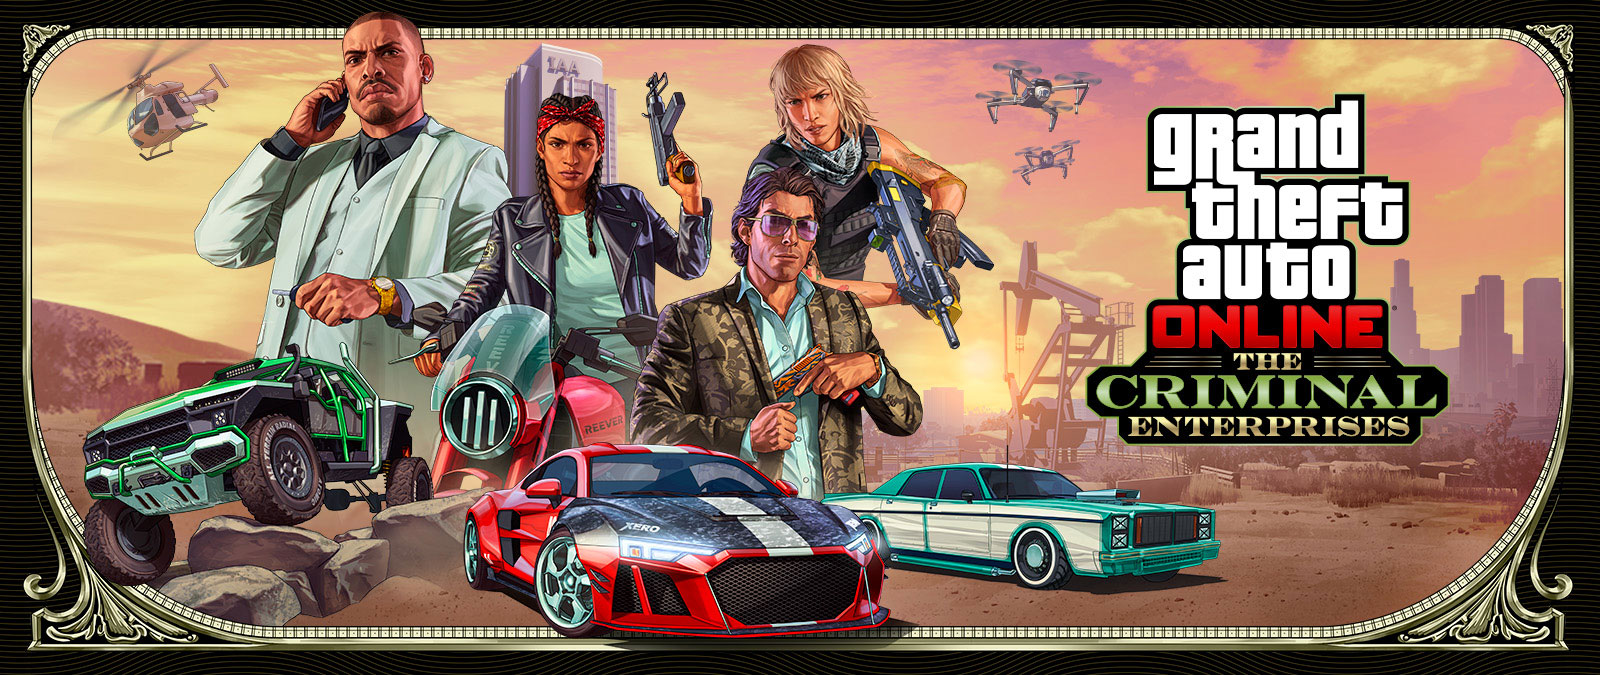 Grand Theft Auto Online: The Criminal Enterprises, Drie stijlvolle voertuigen racen met vier personages erboven.